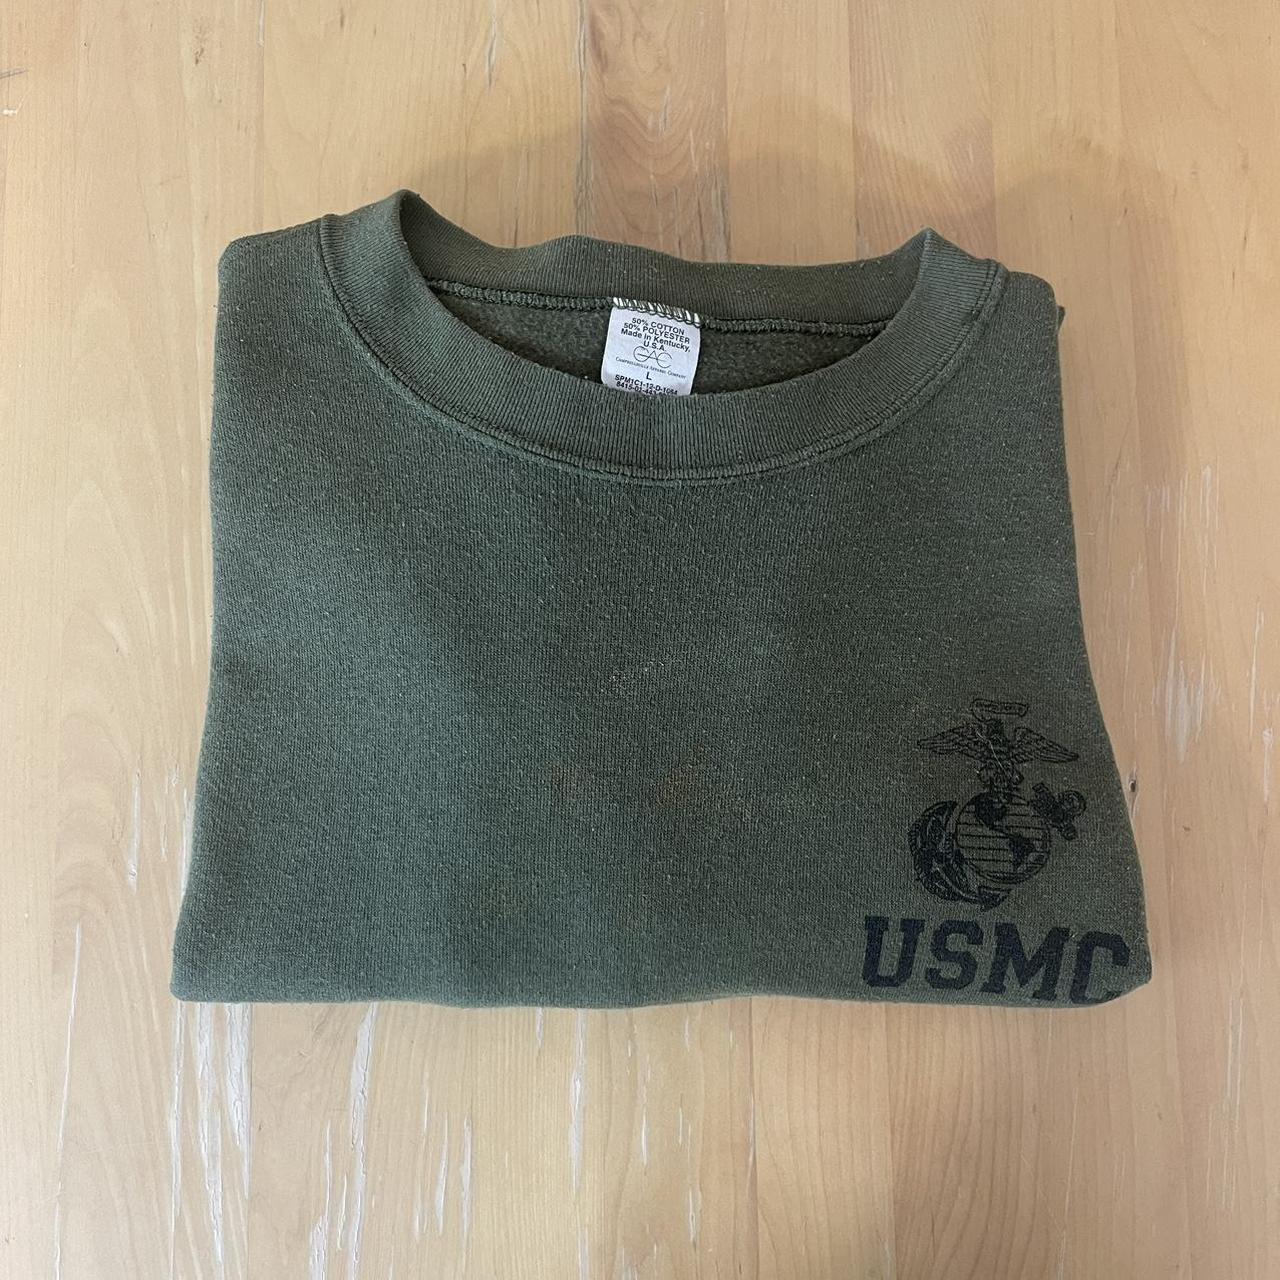 US Marines crewneck sweatshirt Vintage 90s military - Depop